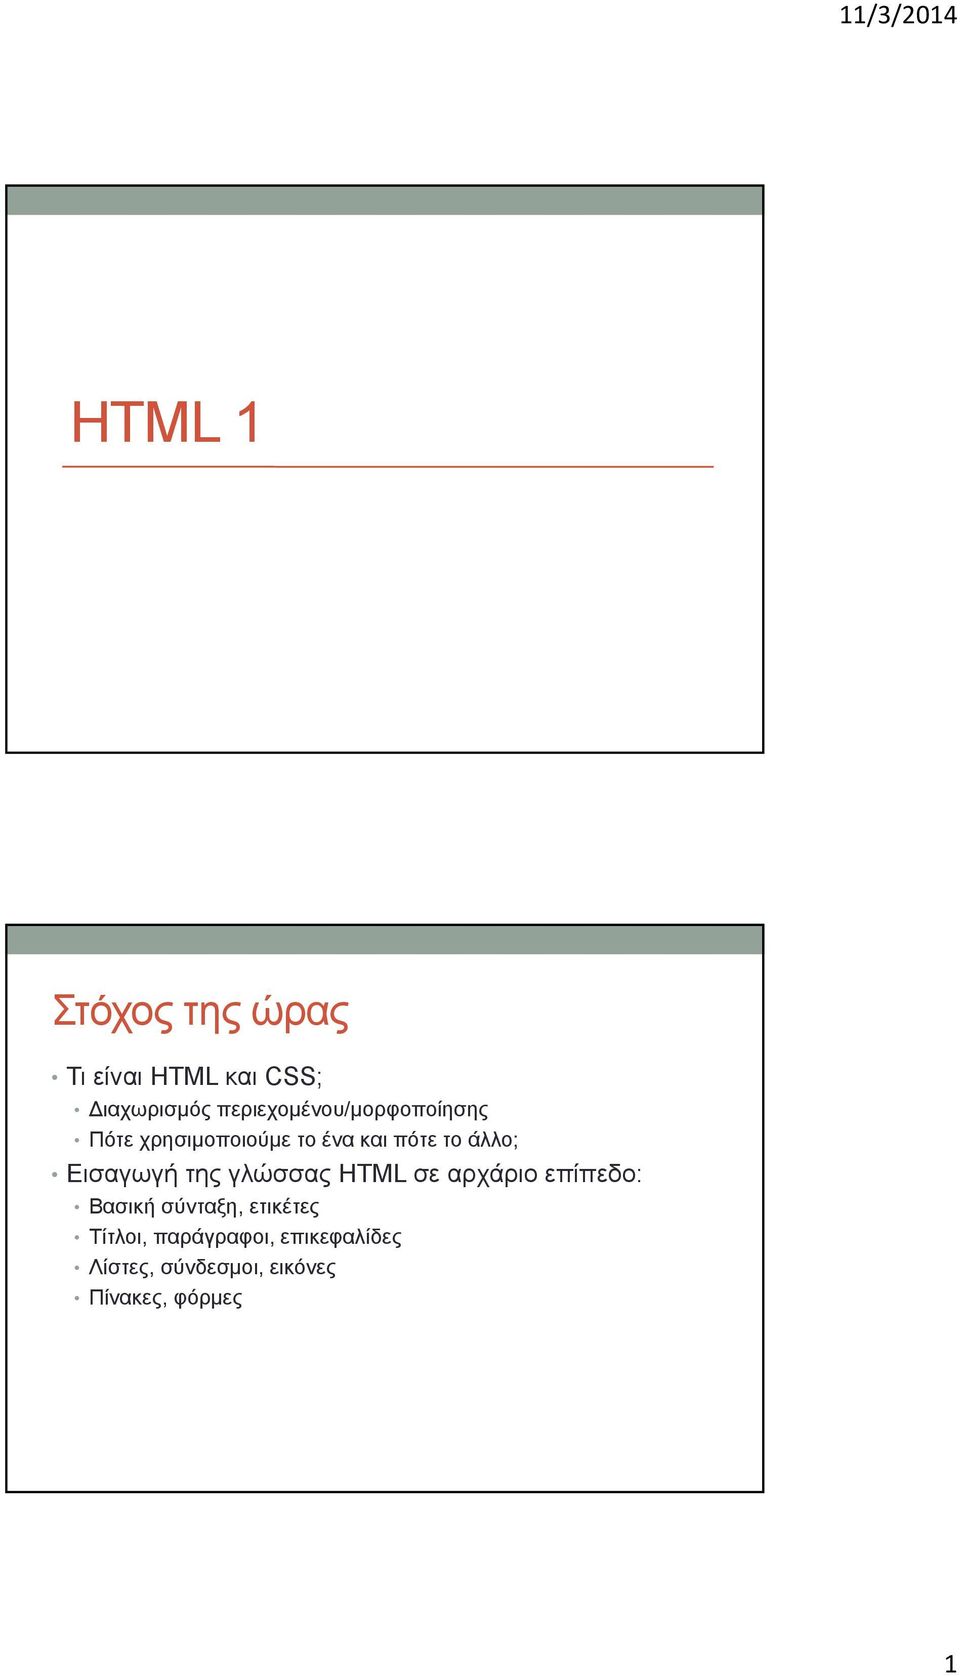 άλλο; Εισαγωγή της γλώσσας HTML σε αρχάριο επίπεδο: Βασική σύνταξη,